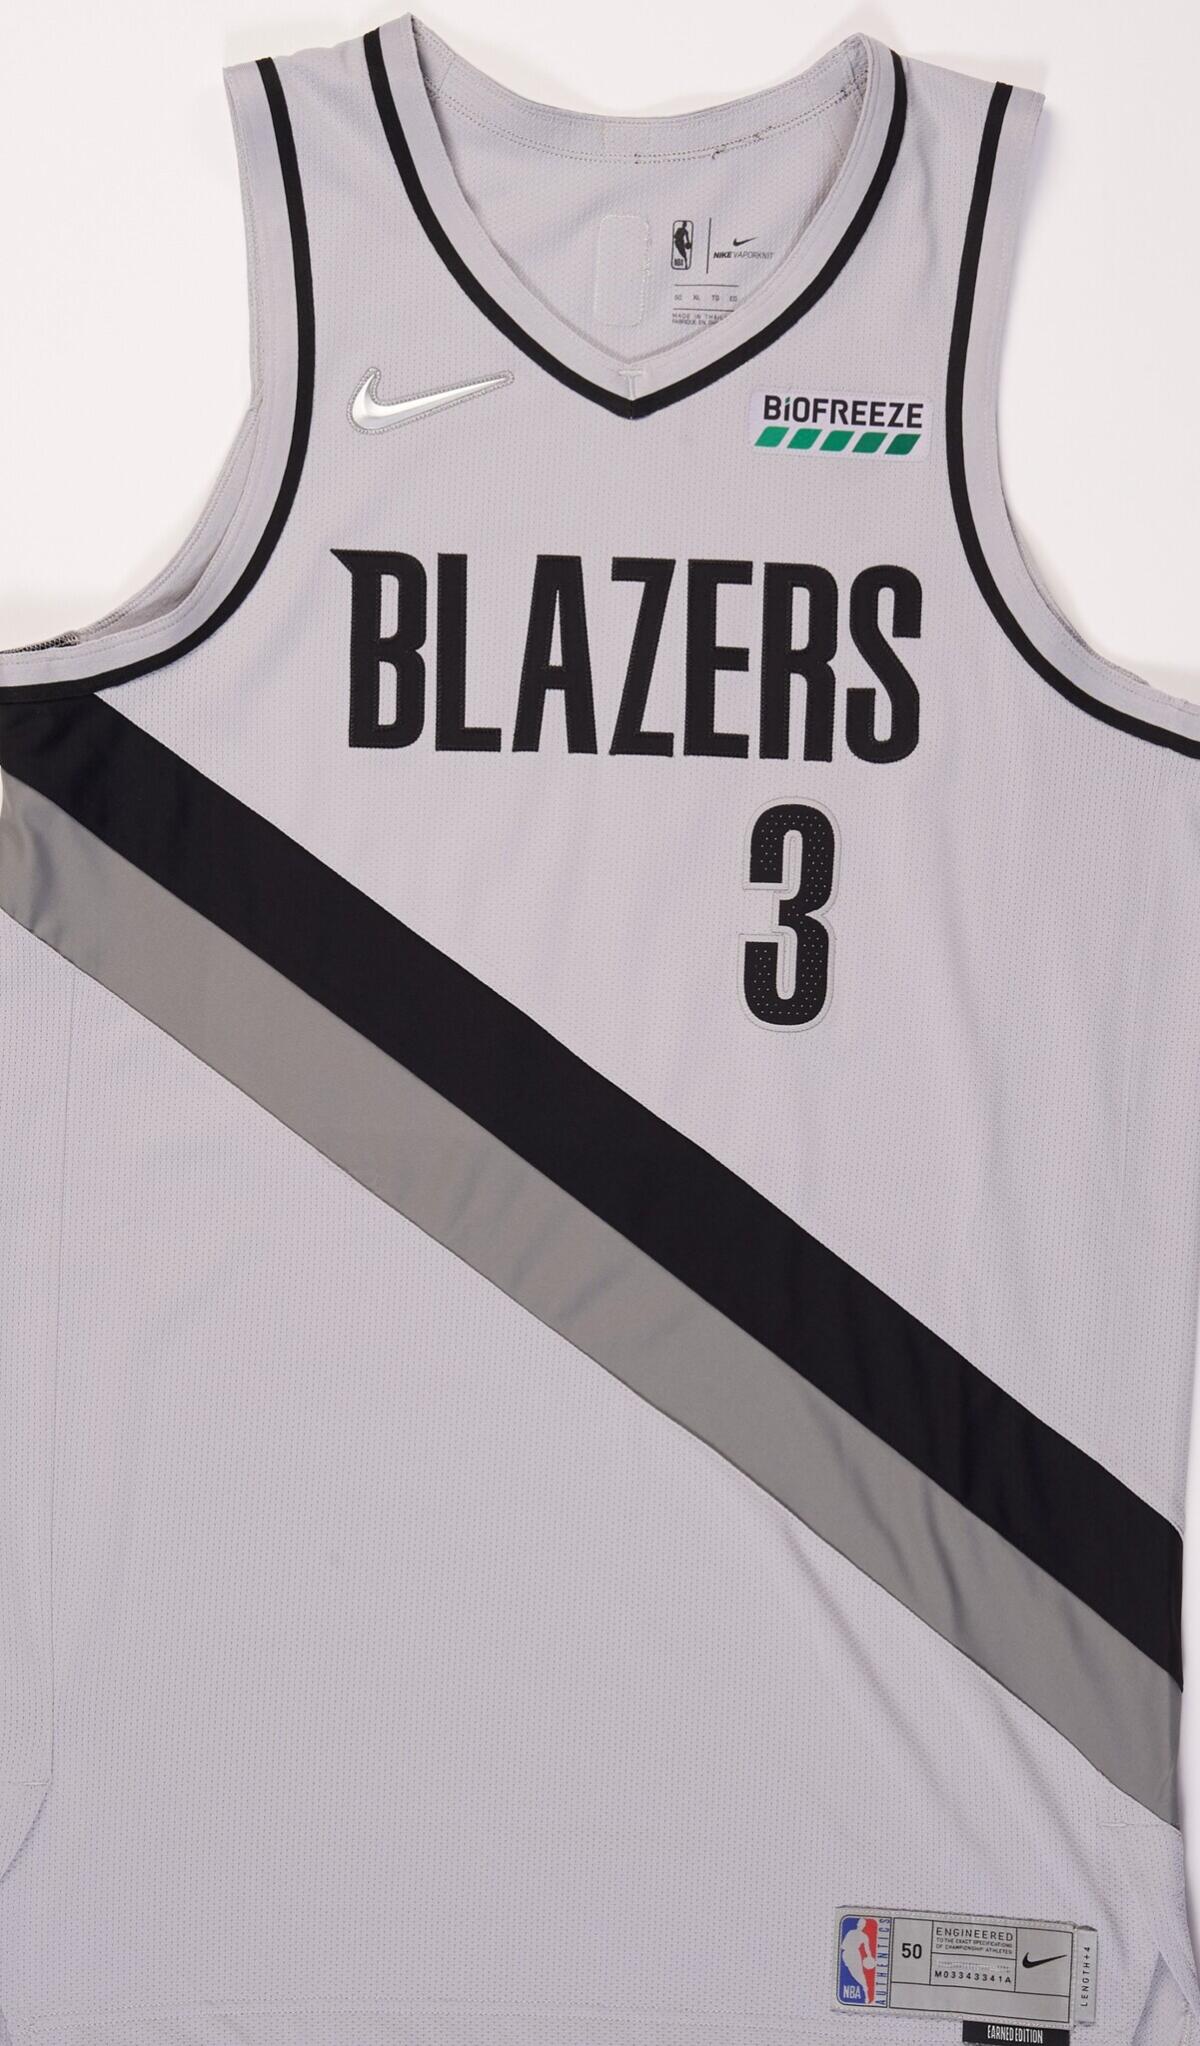 Portland Trail Blazers "Earned Edition" jersey